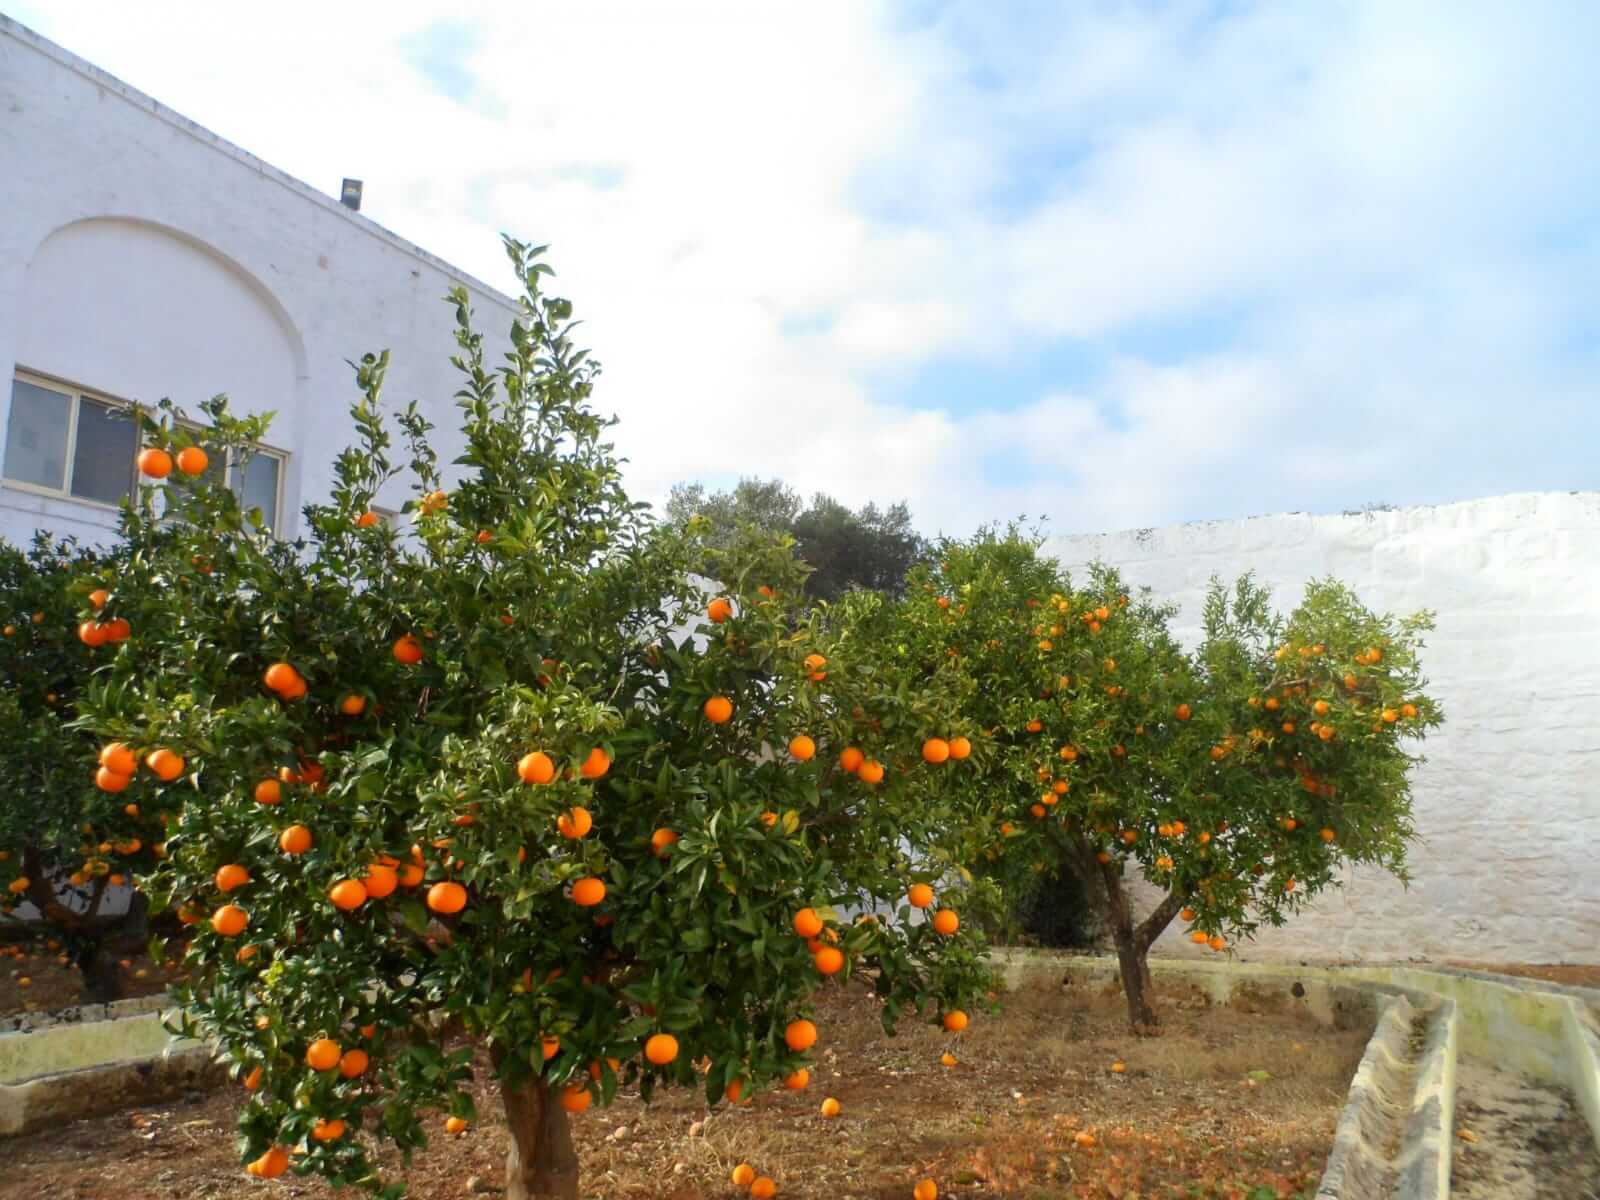 The oranges of Masseria Pugliese